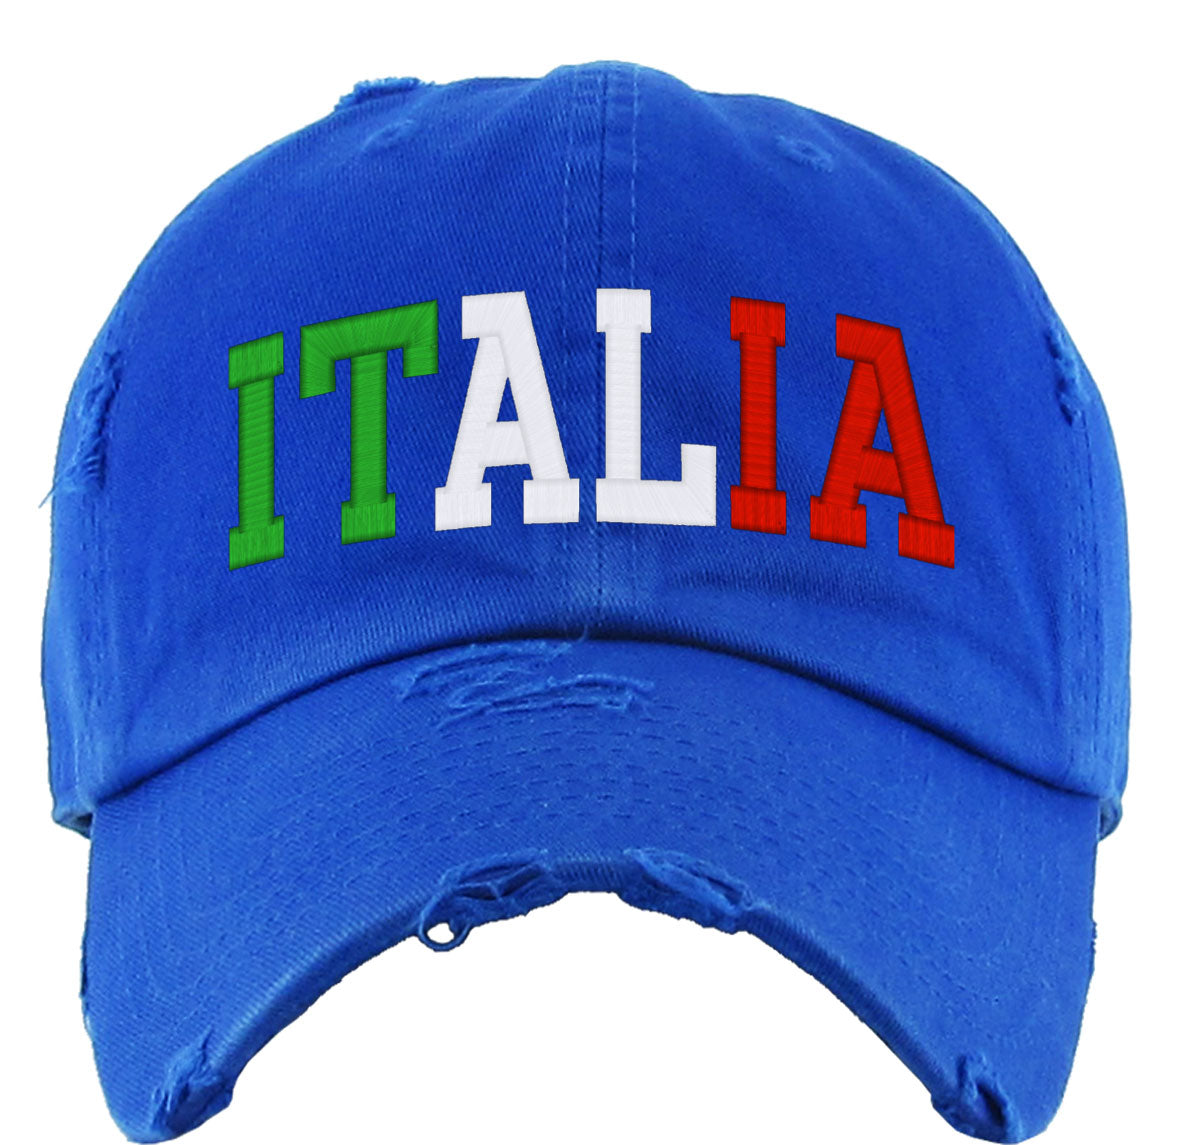 Italia Vintage Baseball Cap